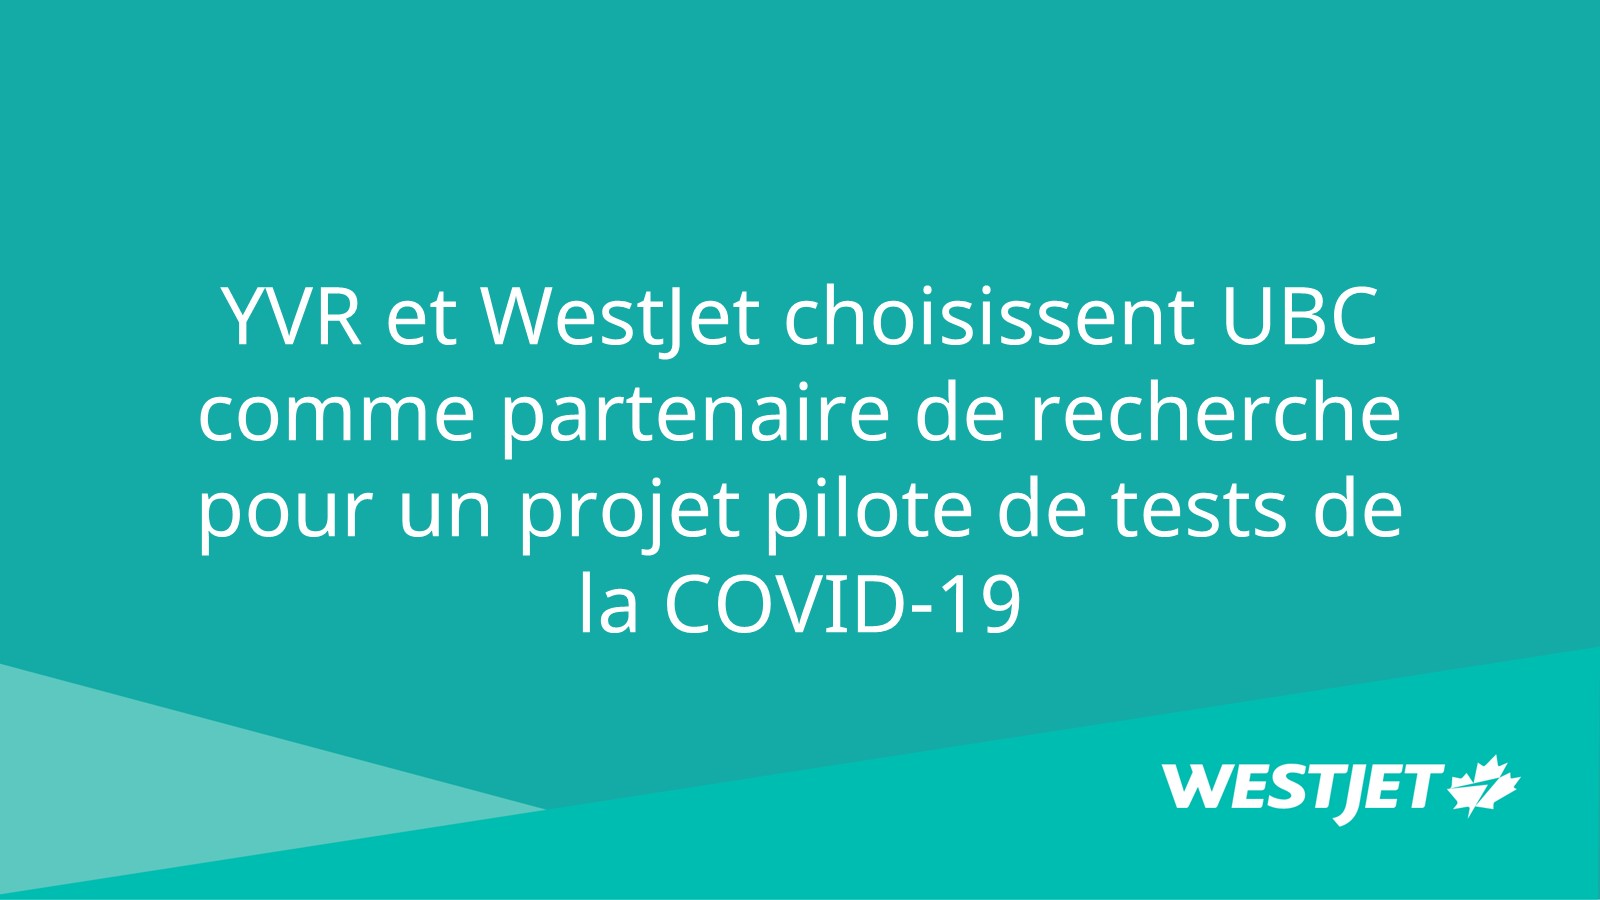 YVR et WestJet choisissent UBC comme partenaire de recherche pour un projet pilote de tests de la COVID-19